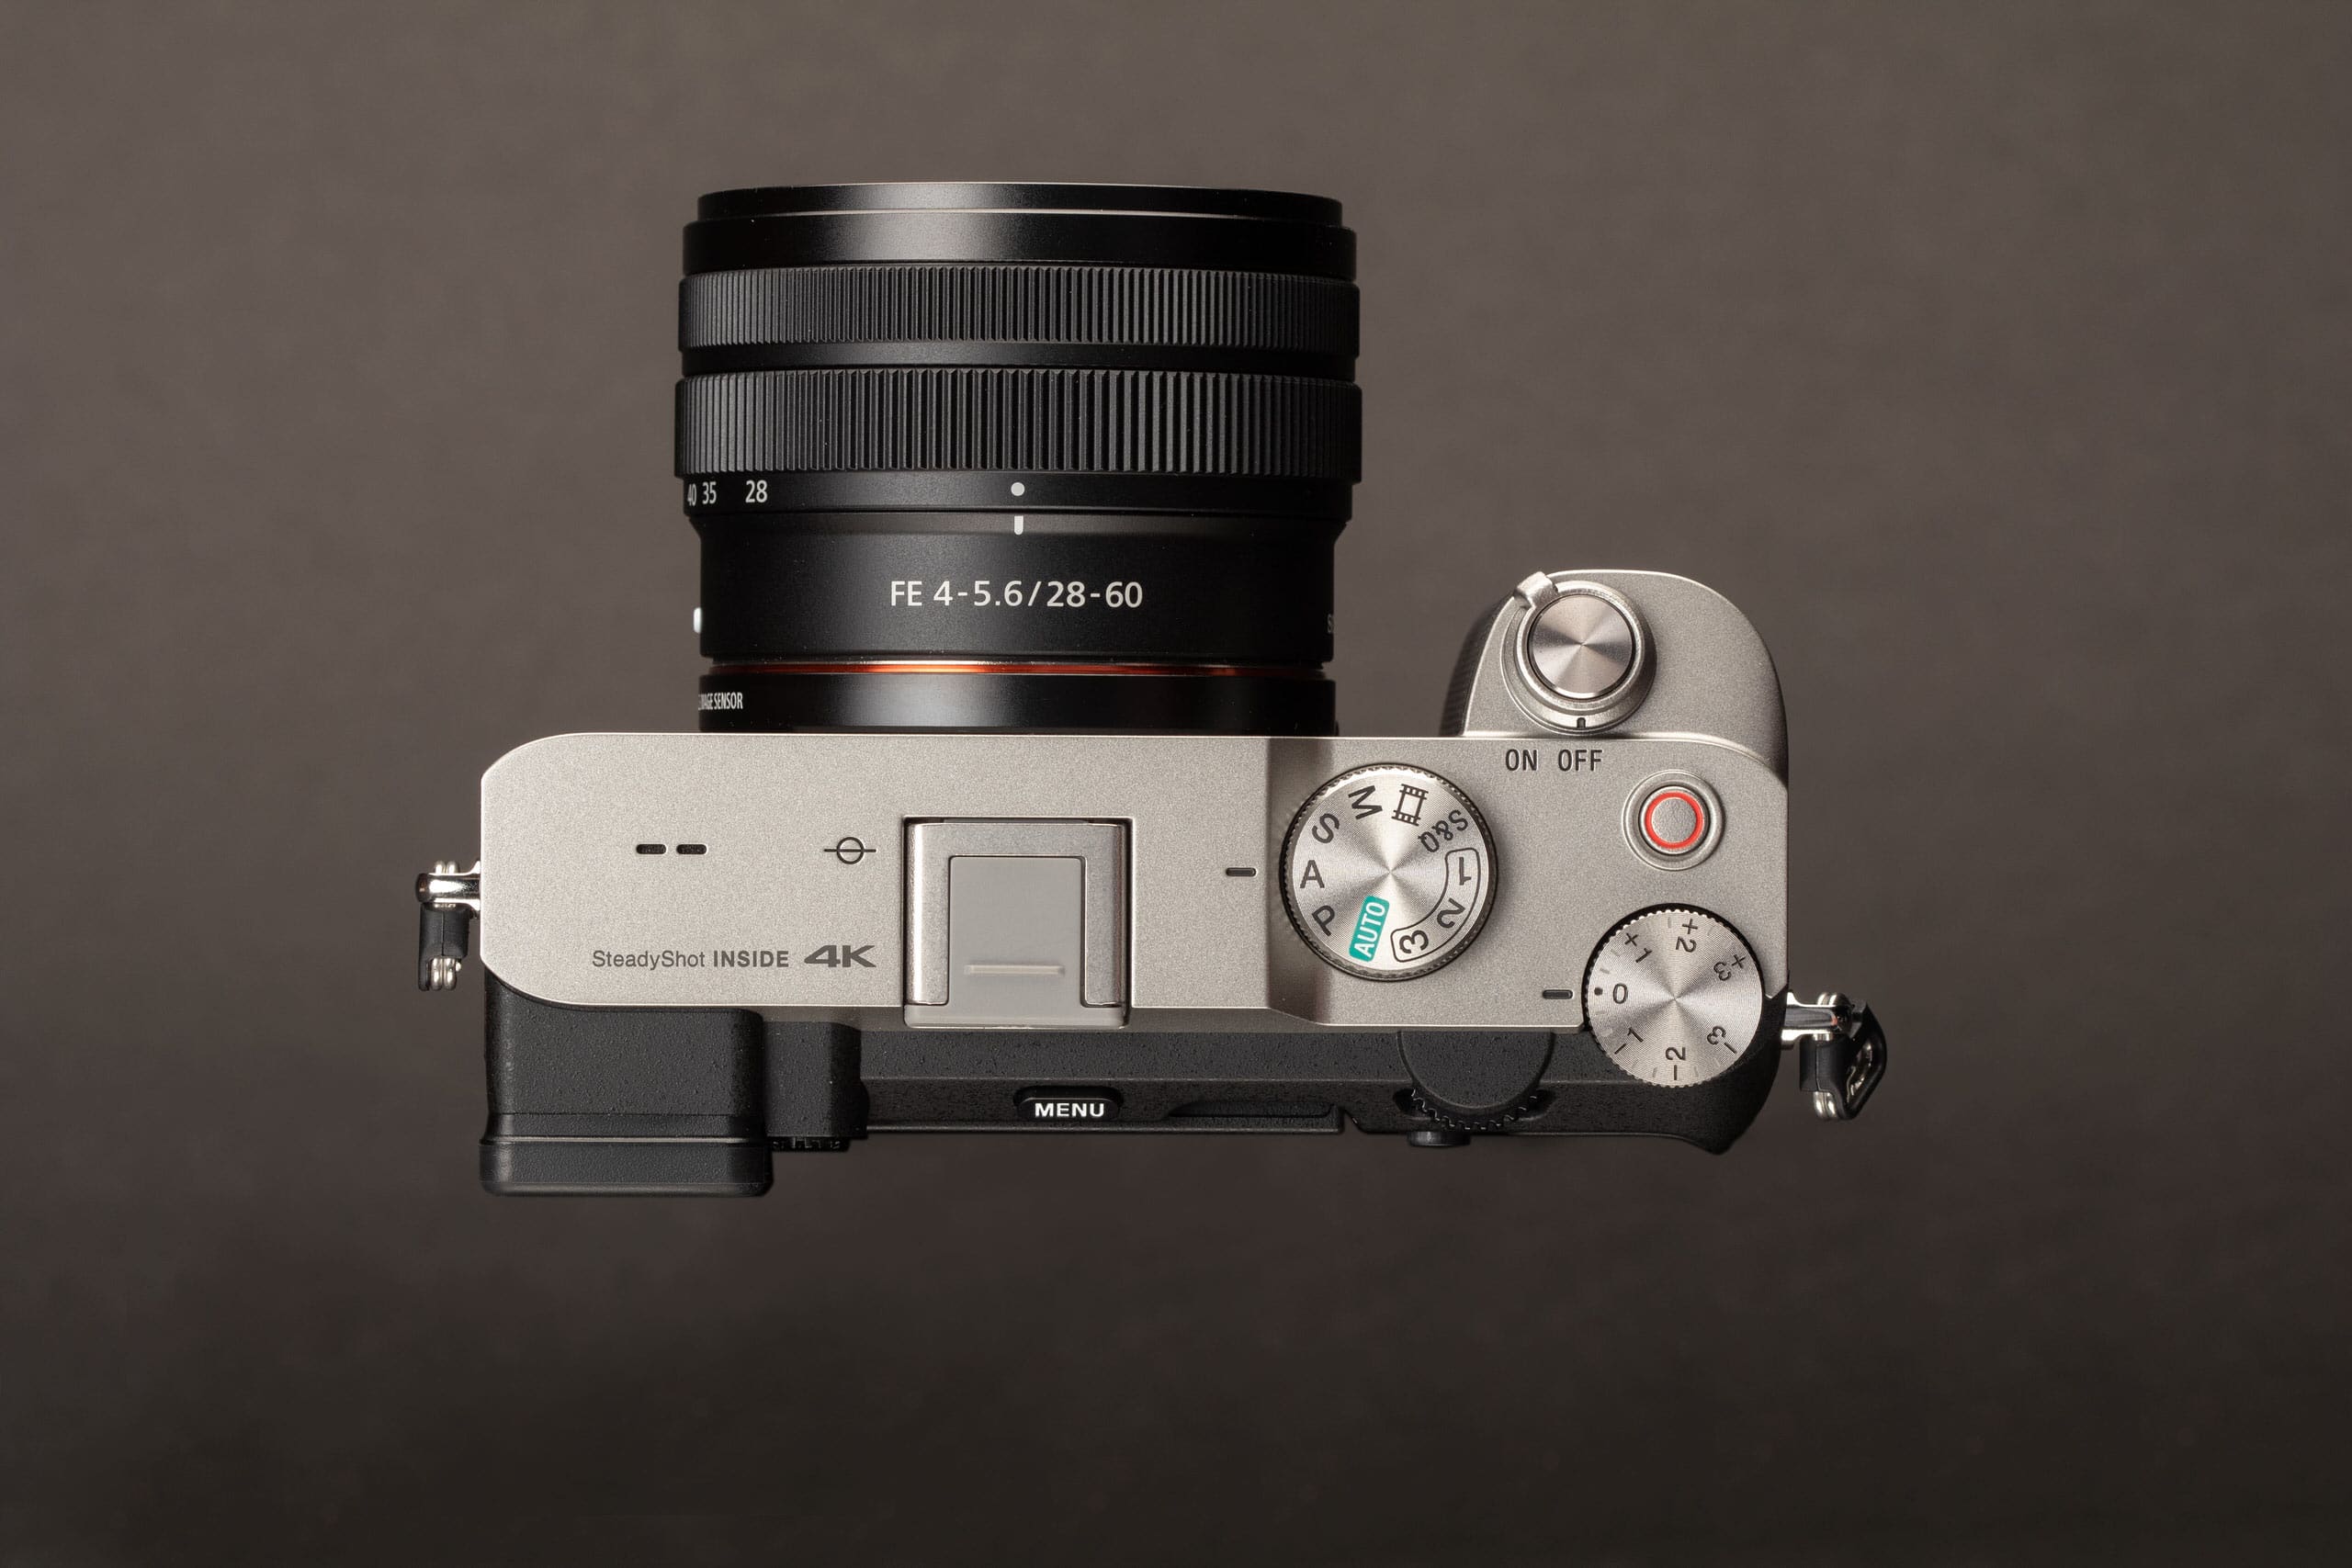 Sony ra mắt ống kính zoom FE 28-60mm F4-5.6 mới